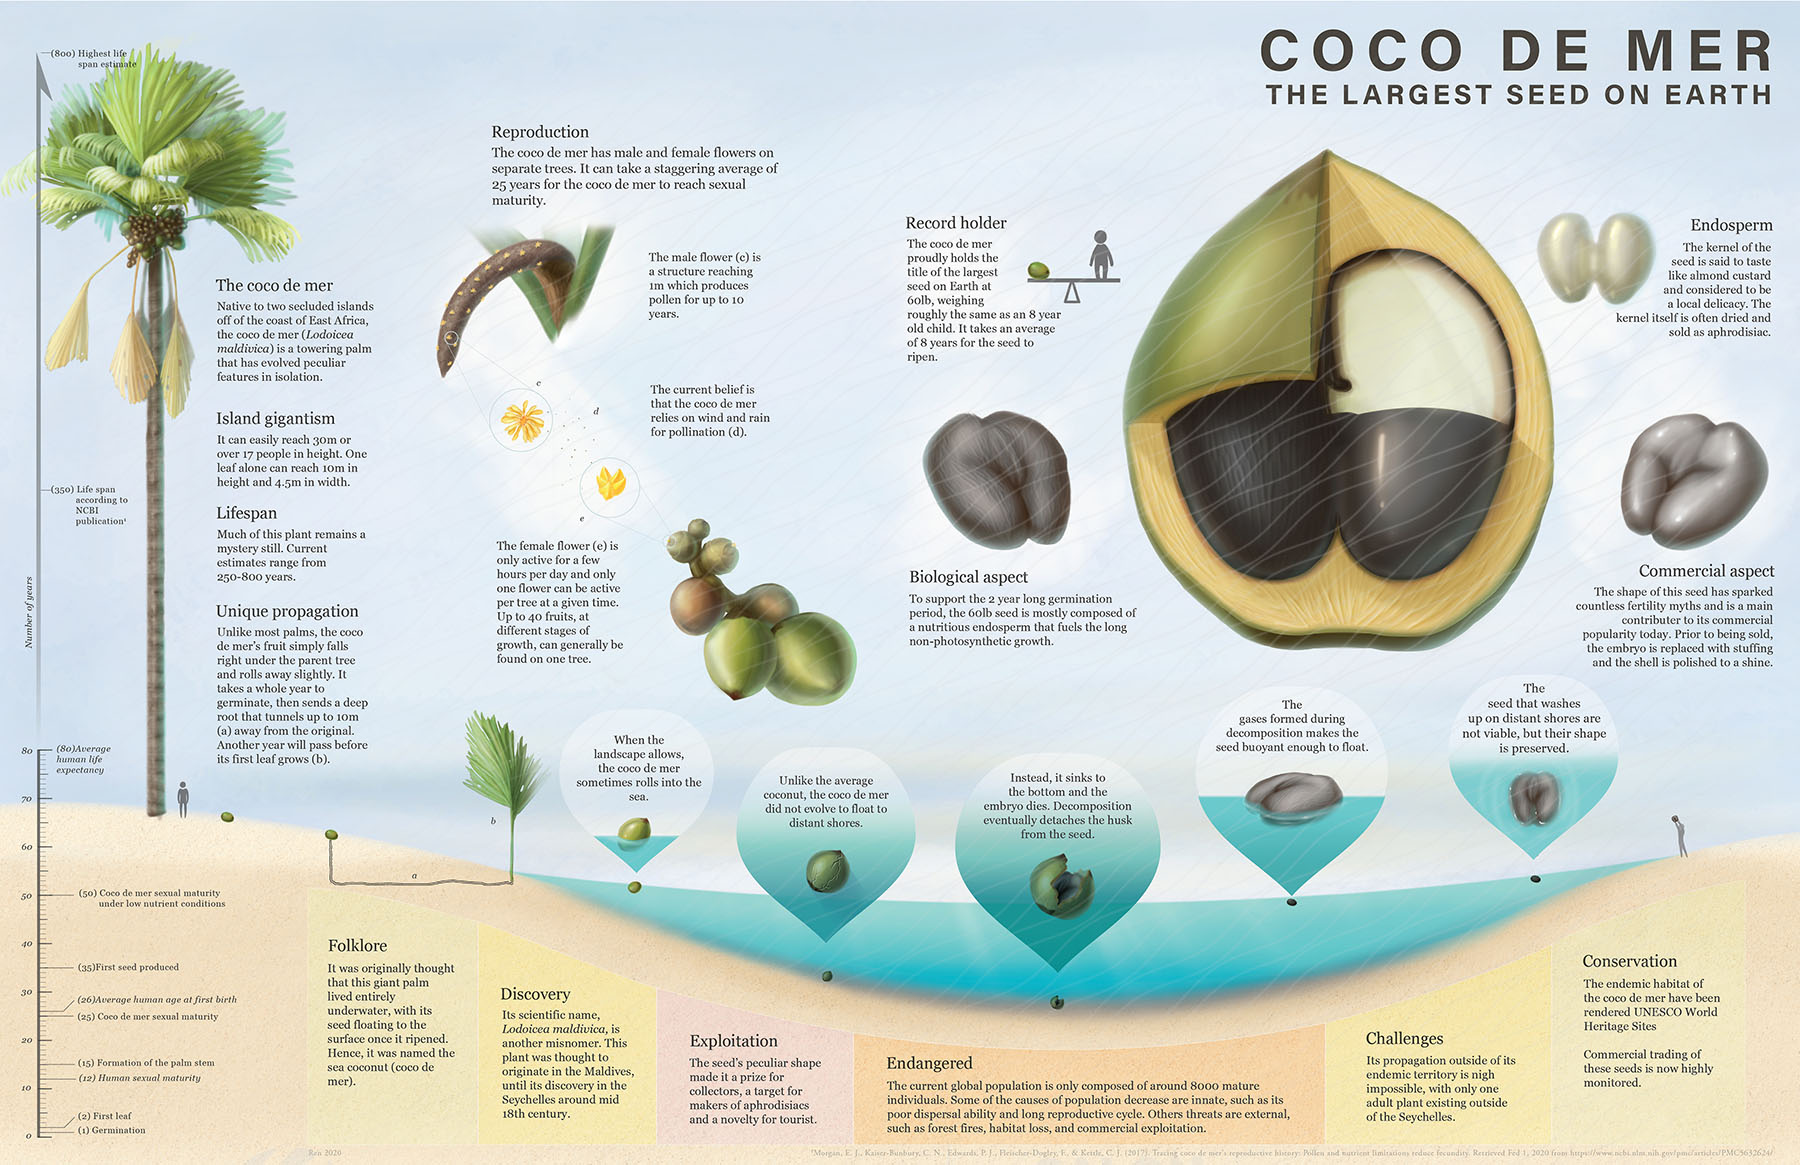 ㅂㅈ같이 생긴 코코넛 씨앗.jpg | 유머 게시판